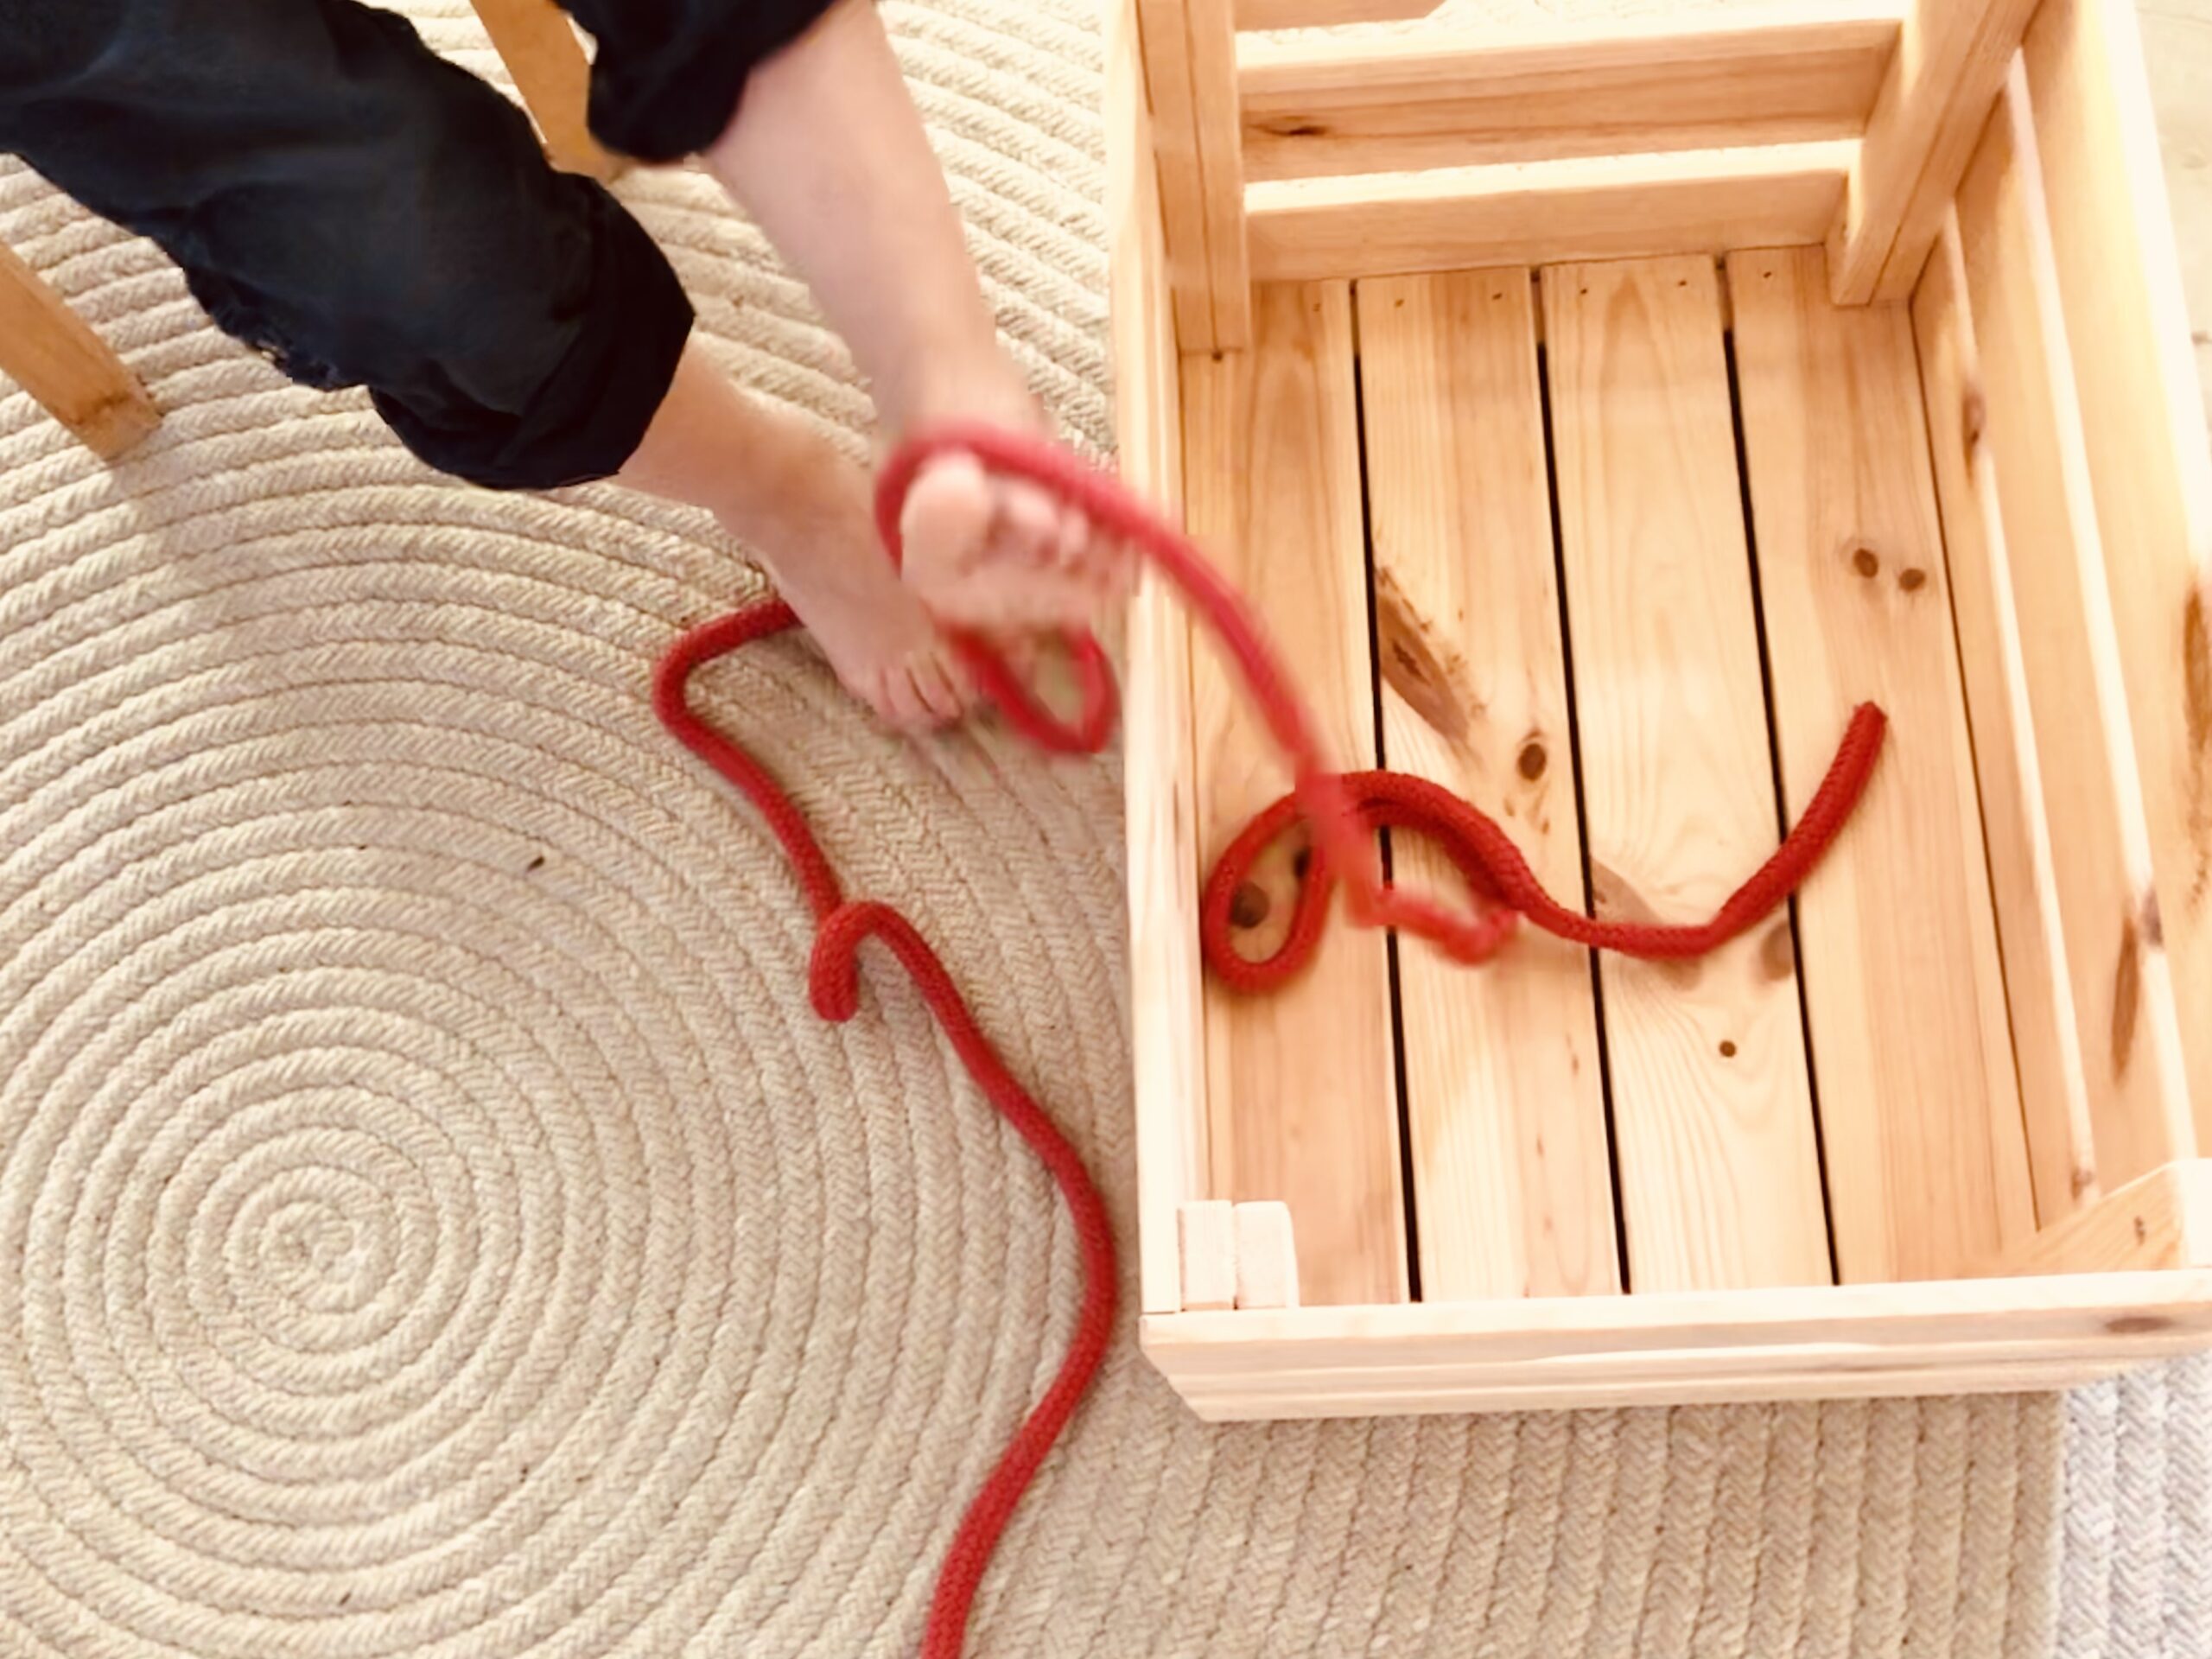 Bild zum Schritt 11 für das Bastel- und DIY-Abenteuer für Kinder: 'Legt ein Seil vor euch und versucht jetzt dieses Seil...'